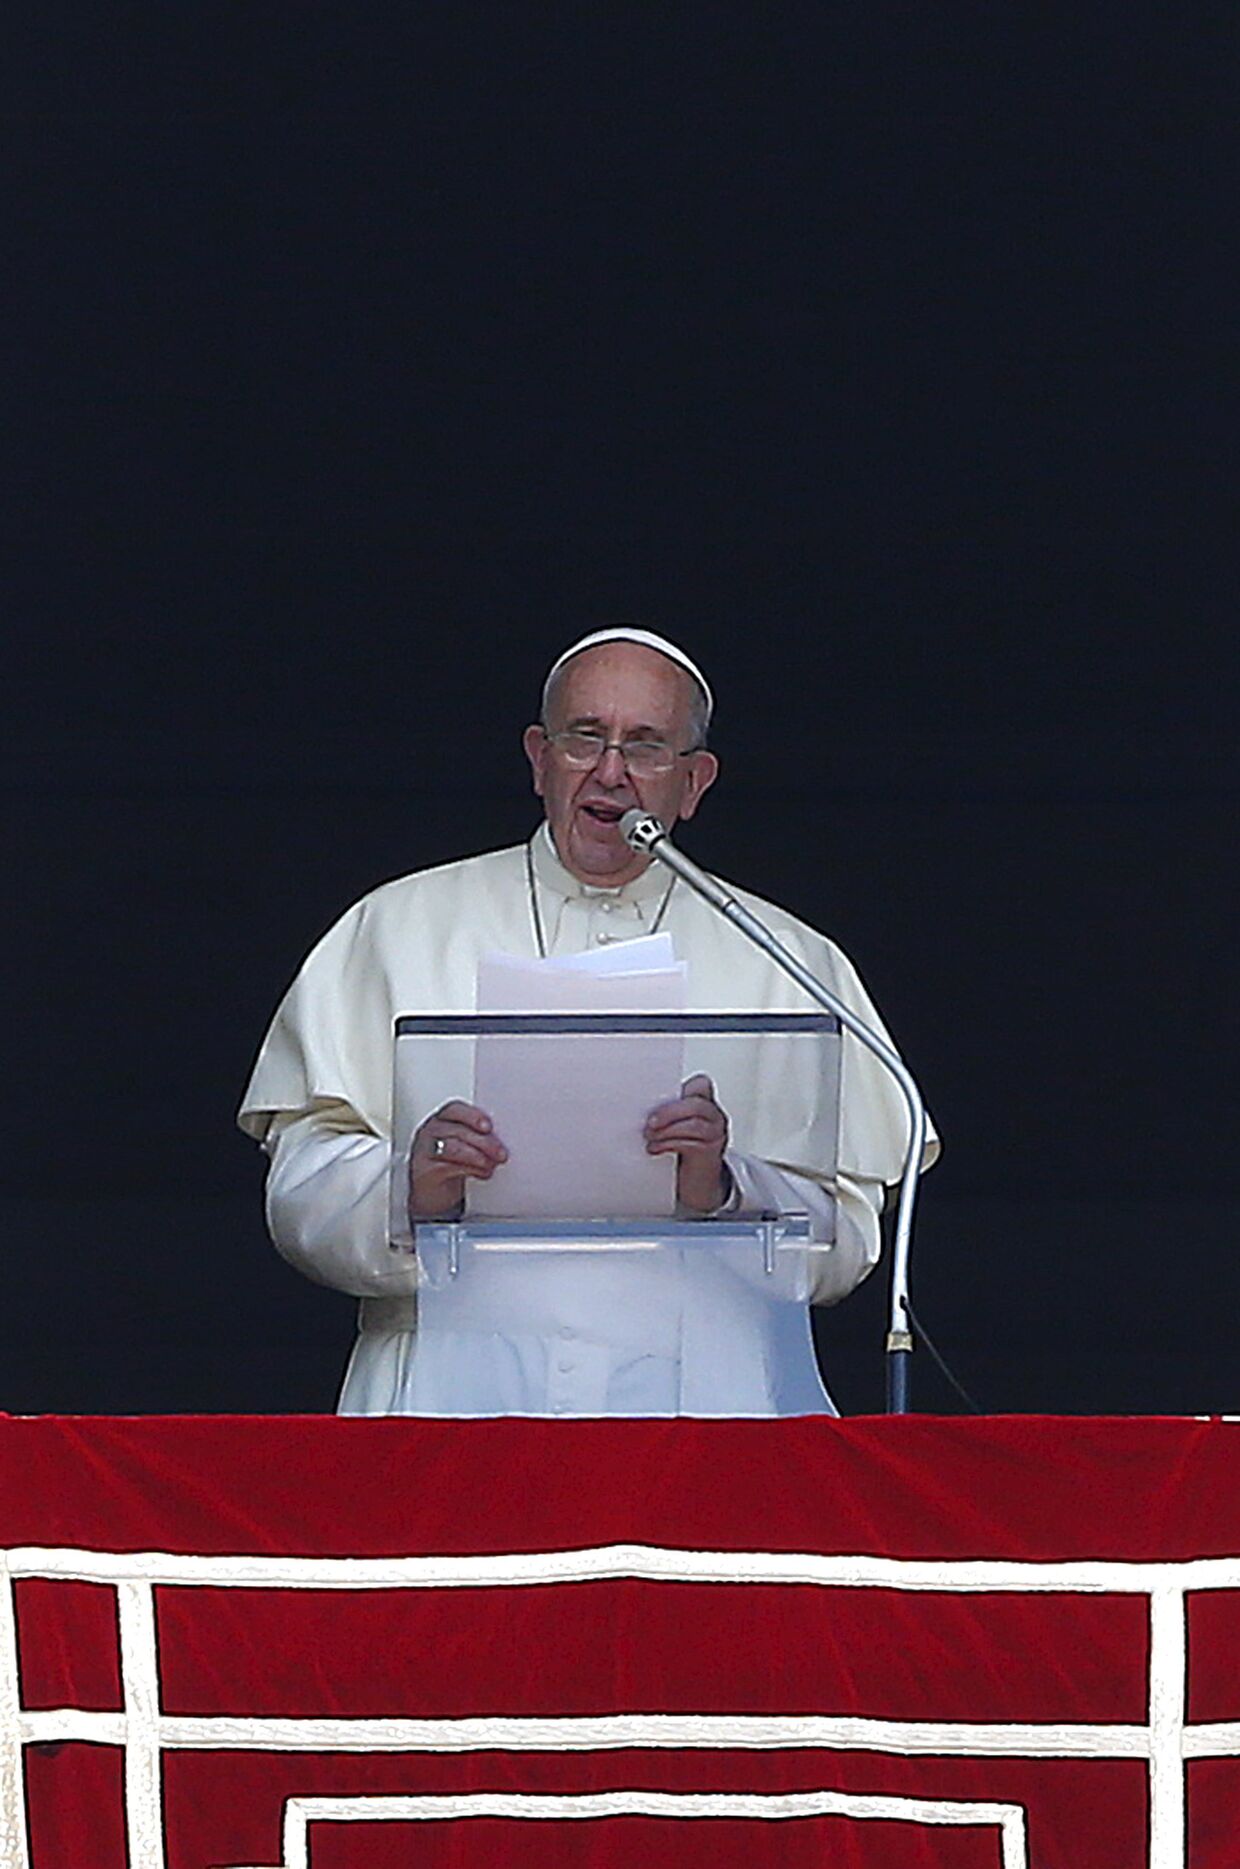 Папа Франциск выступает с проповедью в Риме, 9 августа 2015